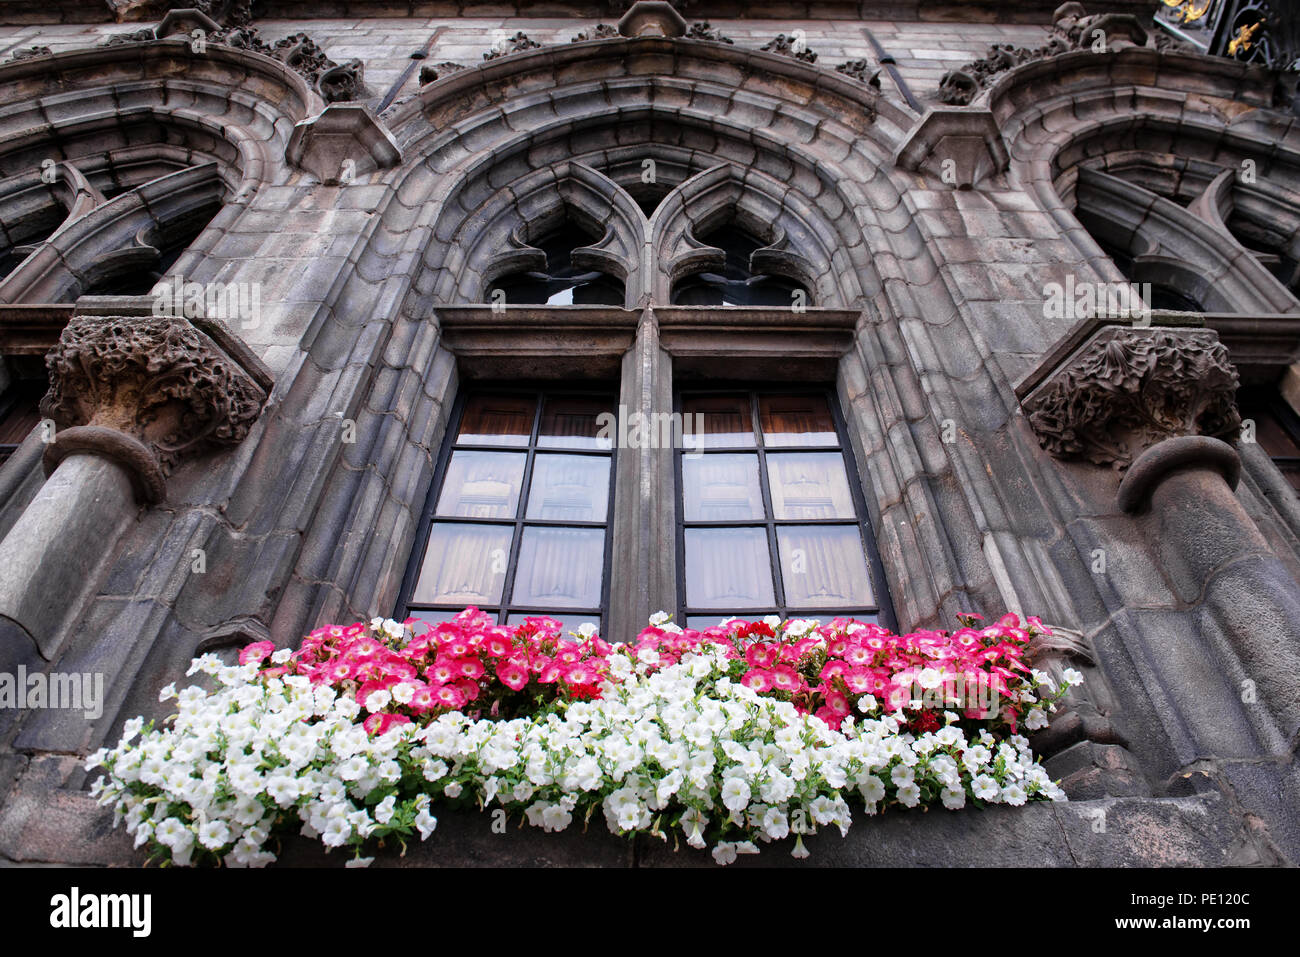 Fleurs de pétunia décorer une fenêtre gothique de l'hôtel de ville de Mons, Belgique Banque D'Images